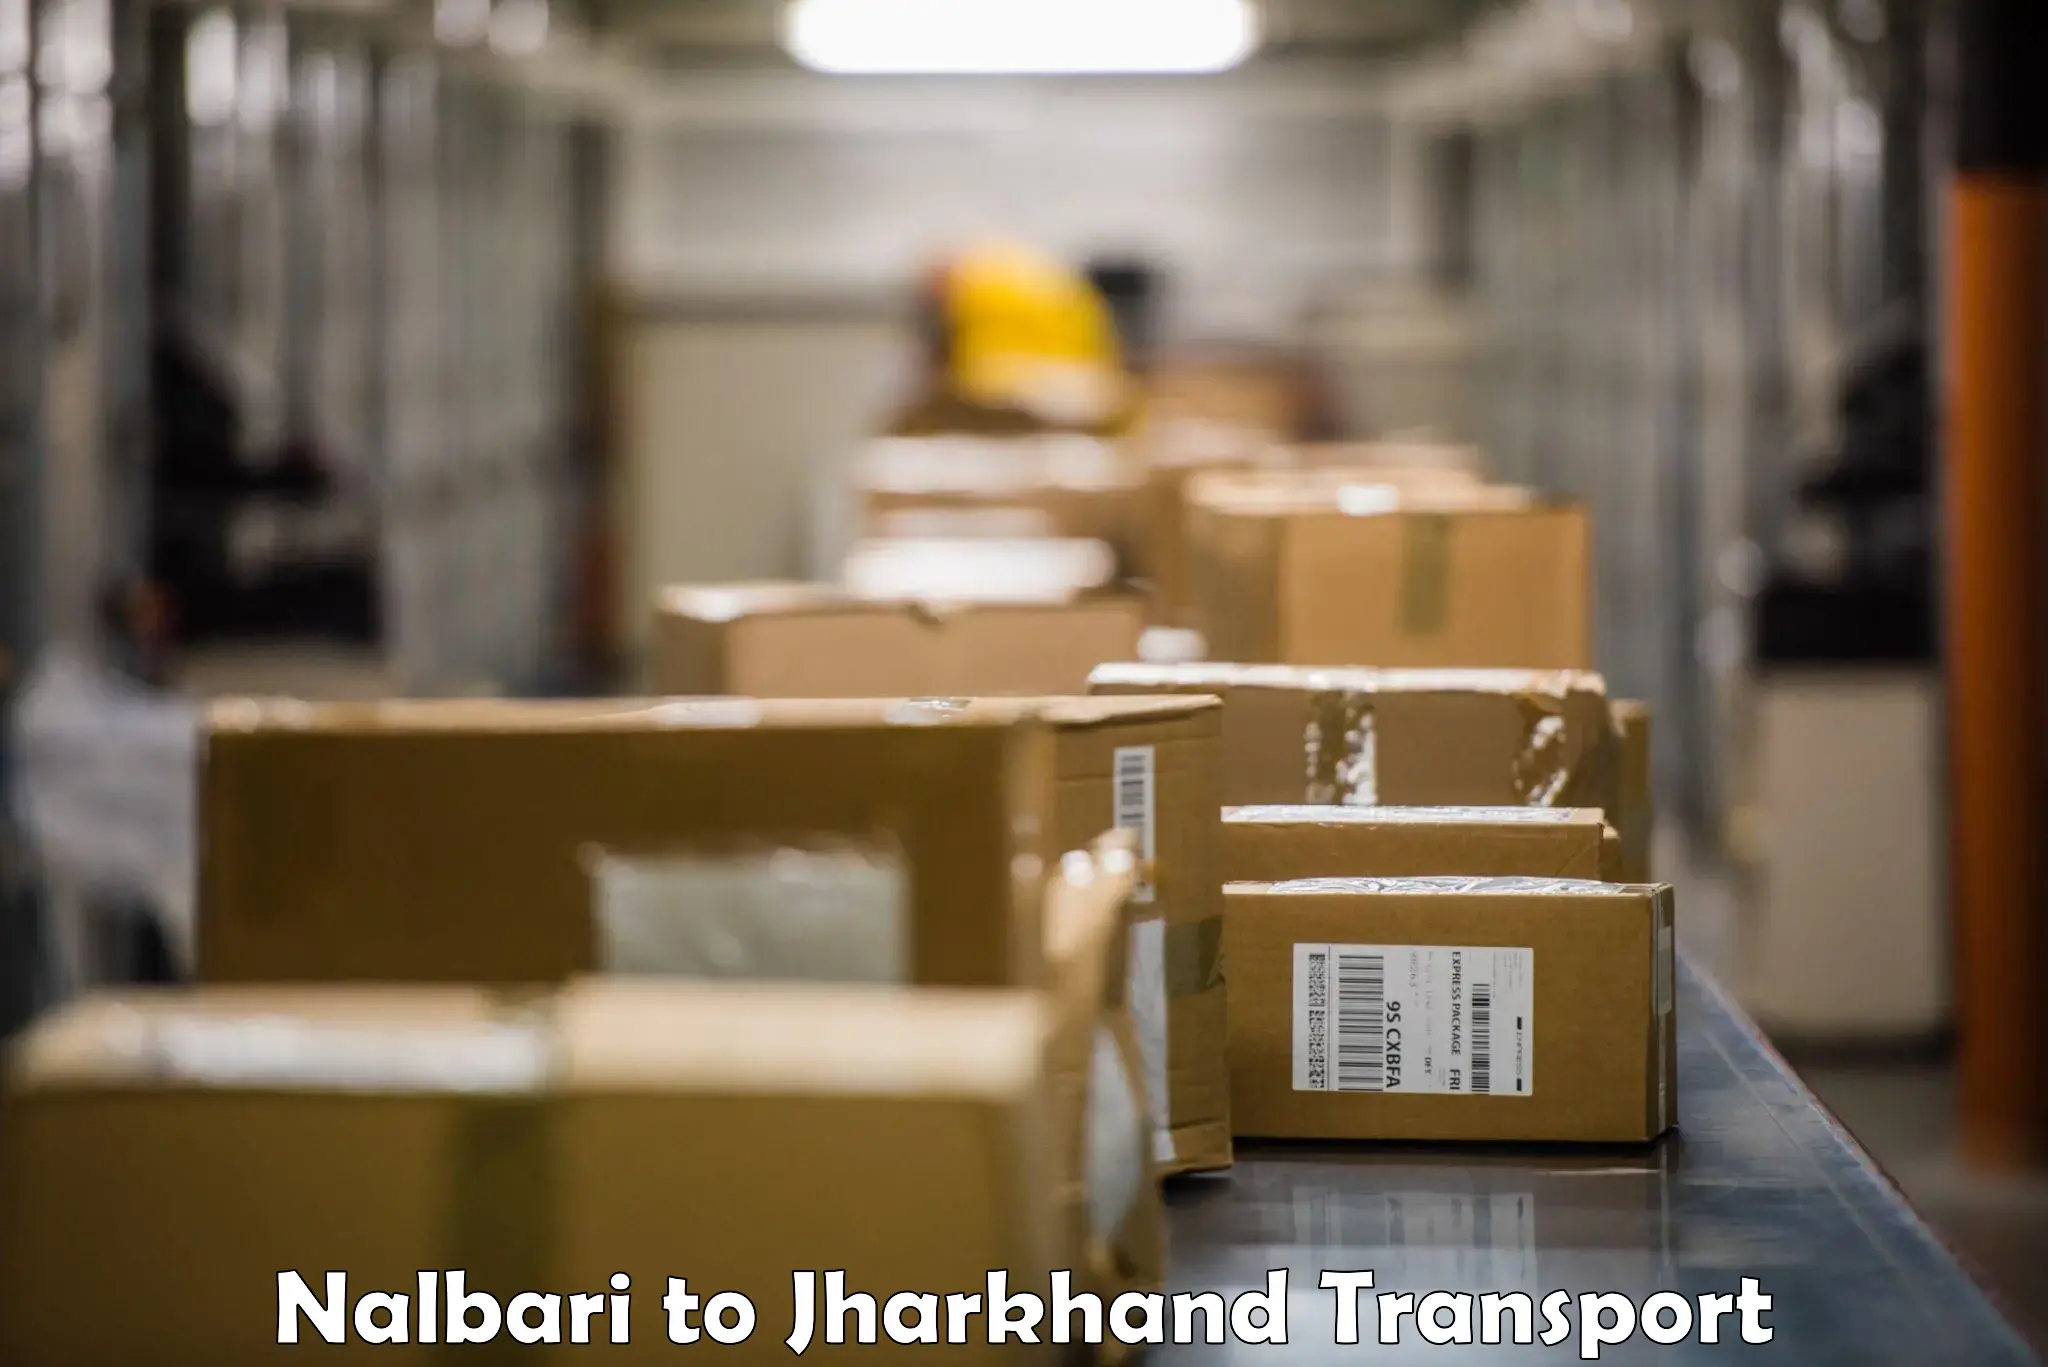 Truck transport companies in India Nalbari to Topchanchi